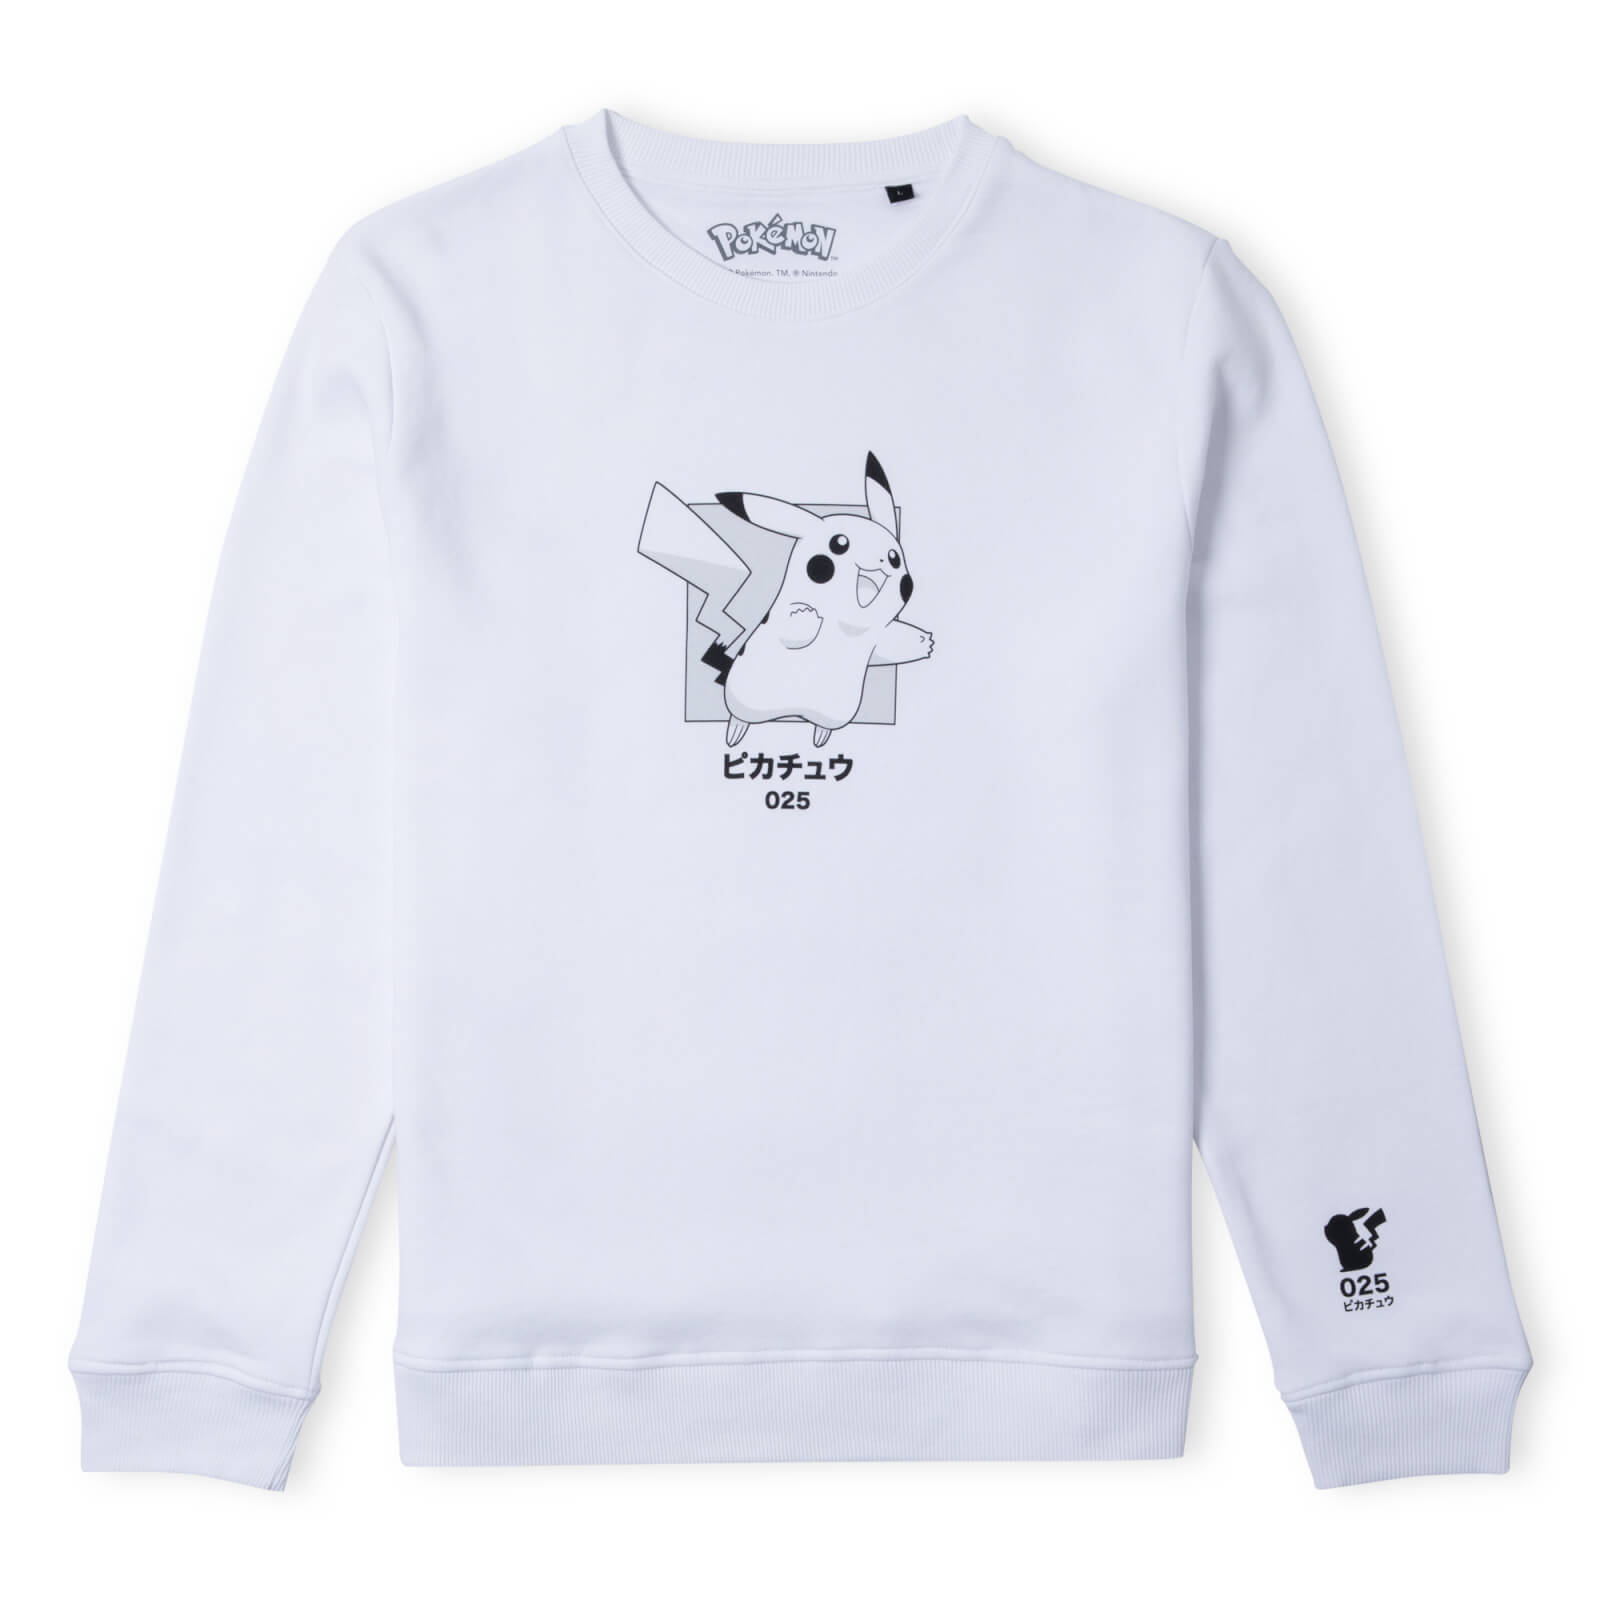 Pokémon Pikachu Jump Unisex Sweatshirt - Weiß - M - Weiß